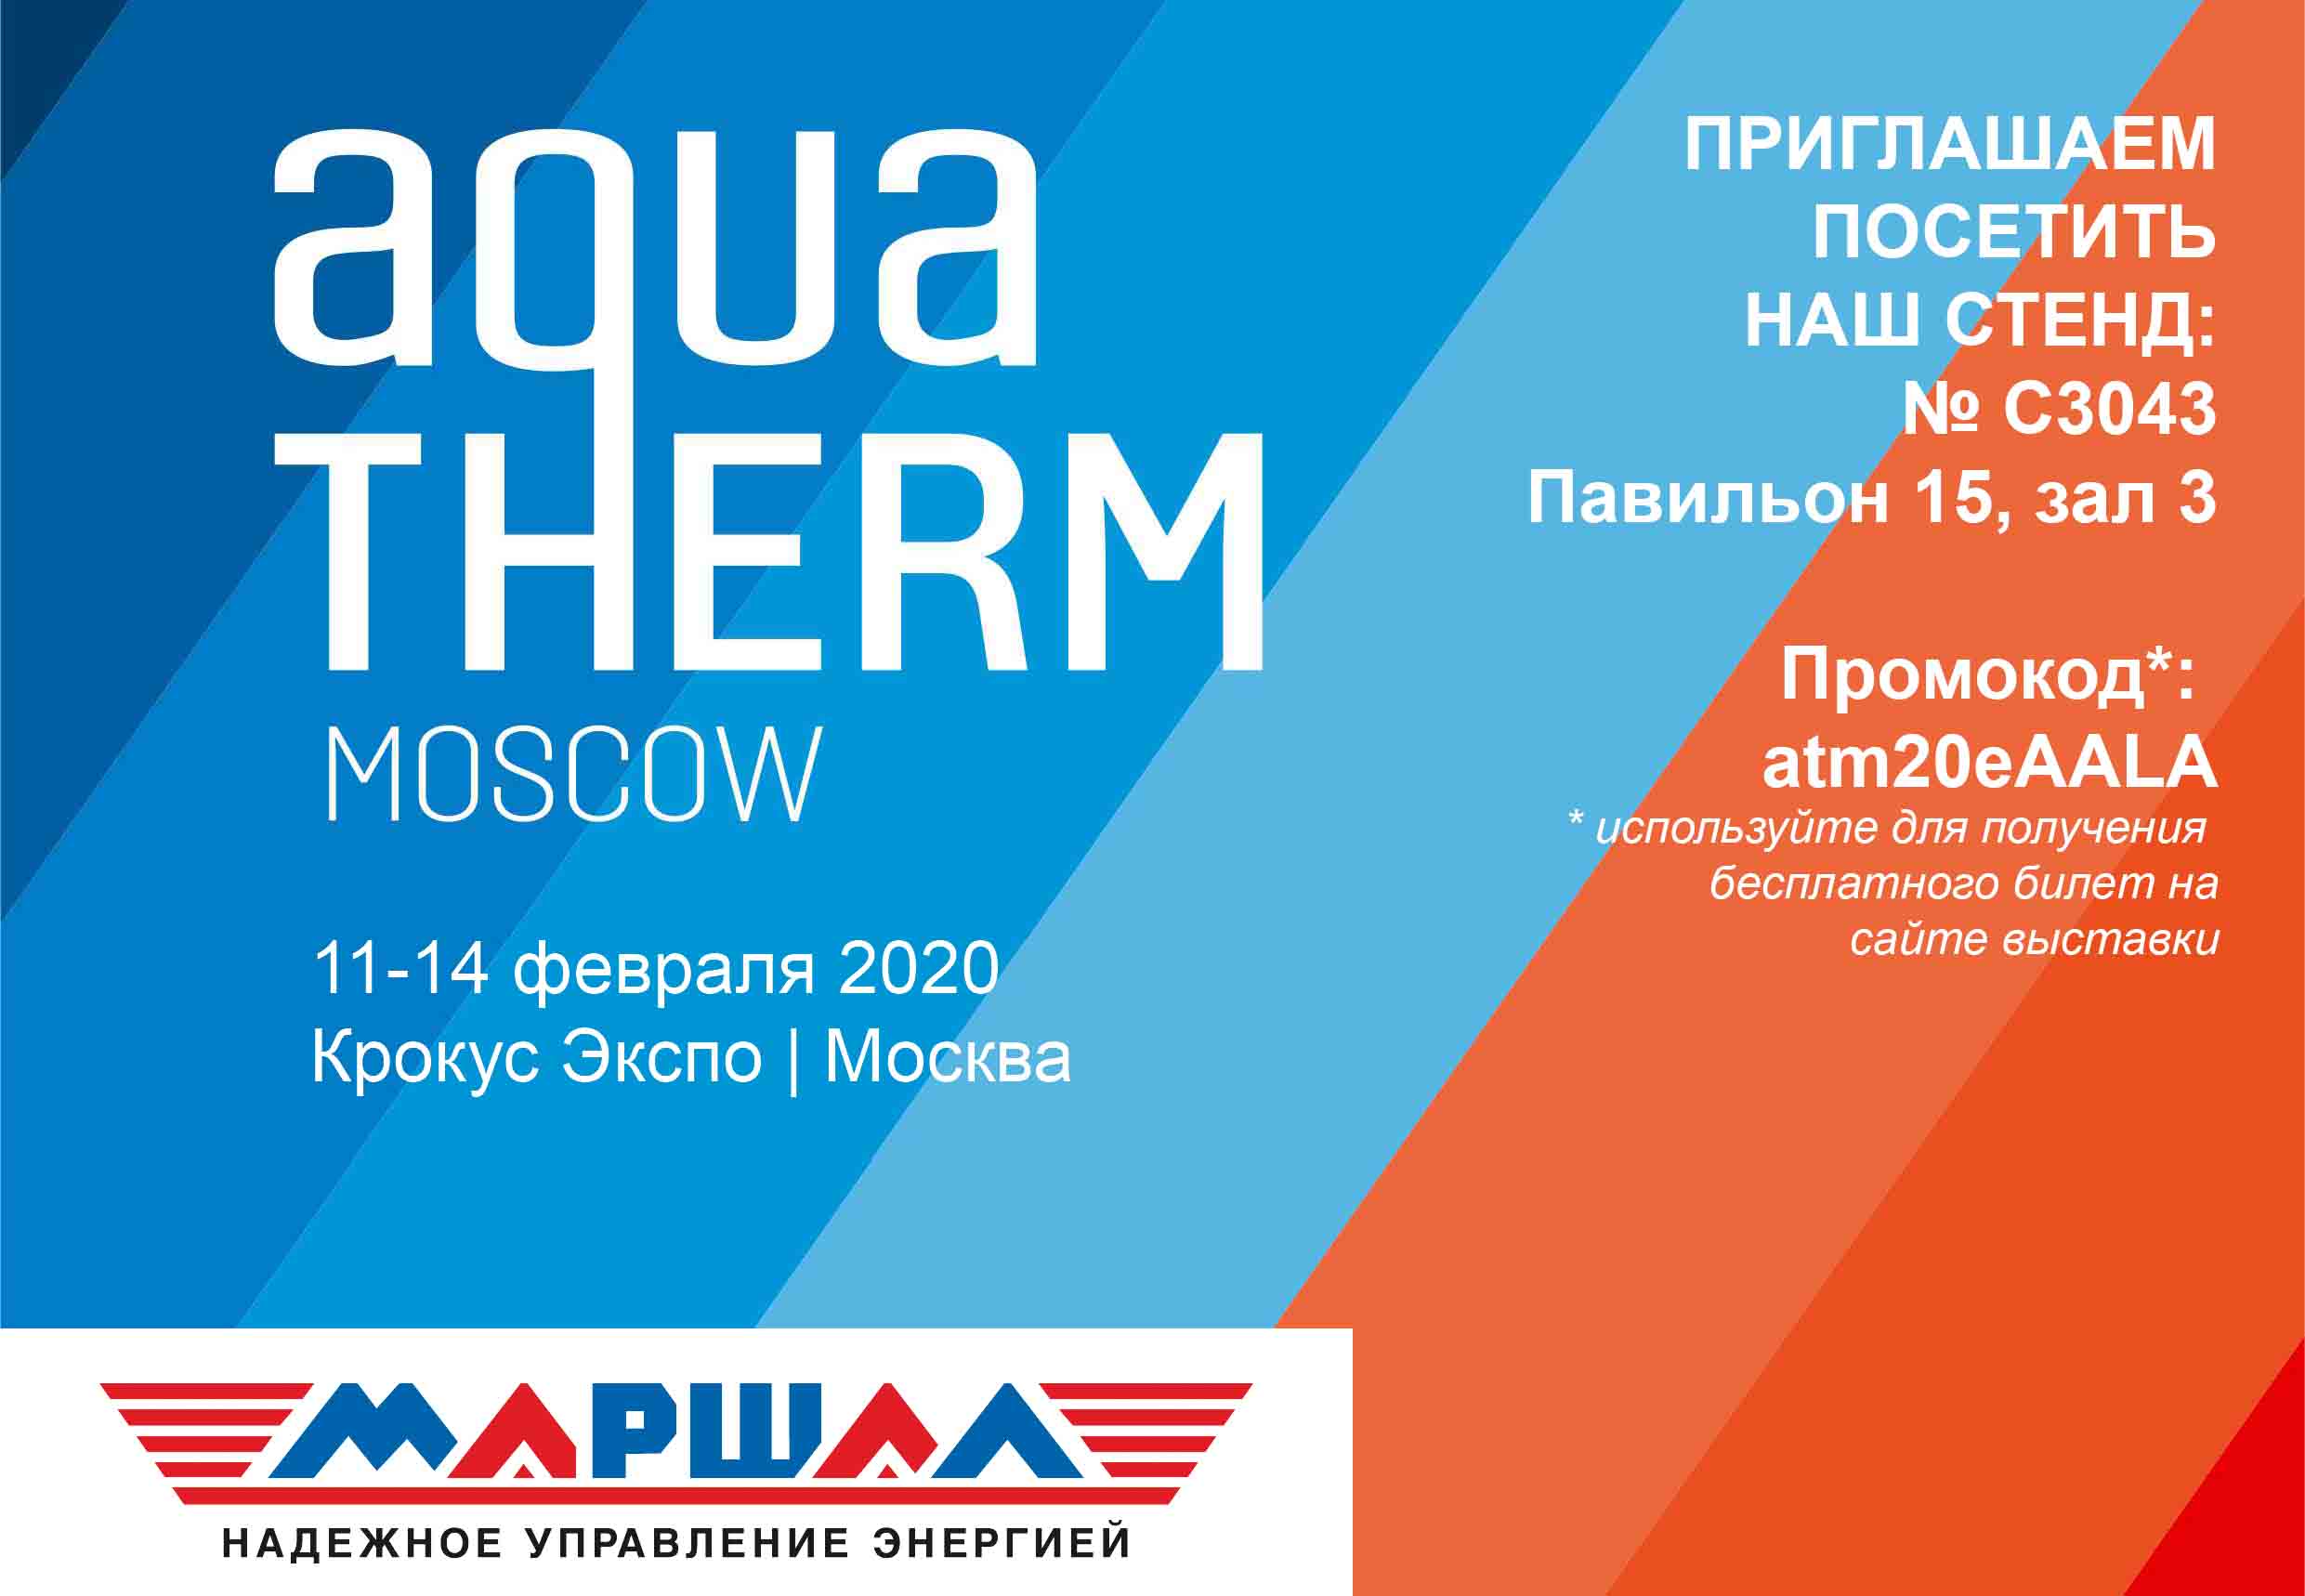 Приглашаем на выставку Aquatherm Moscow 2020 11-14 февраля 2020 г.